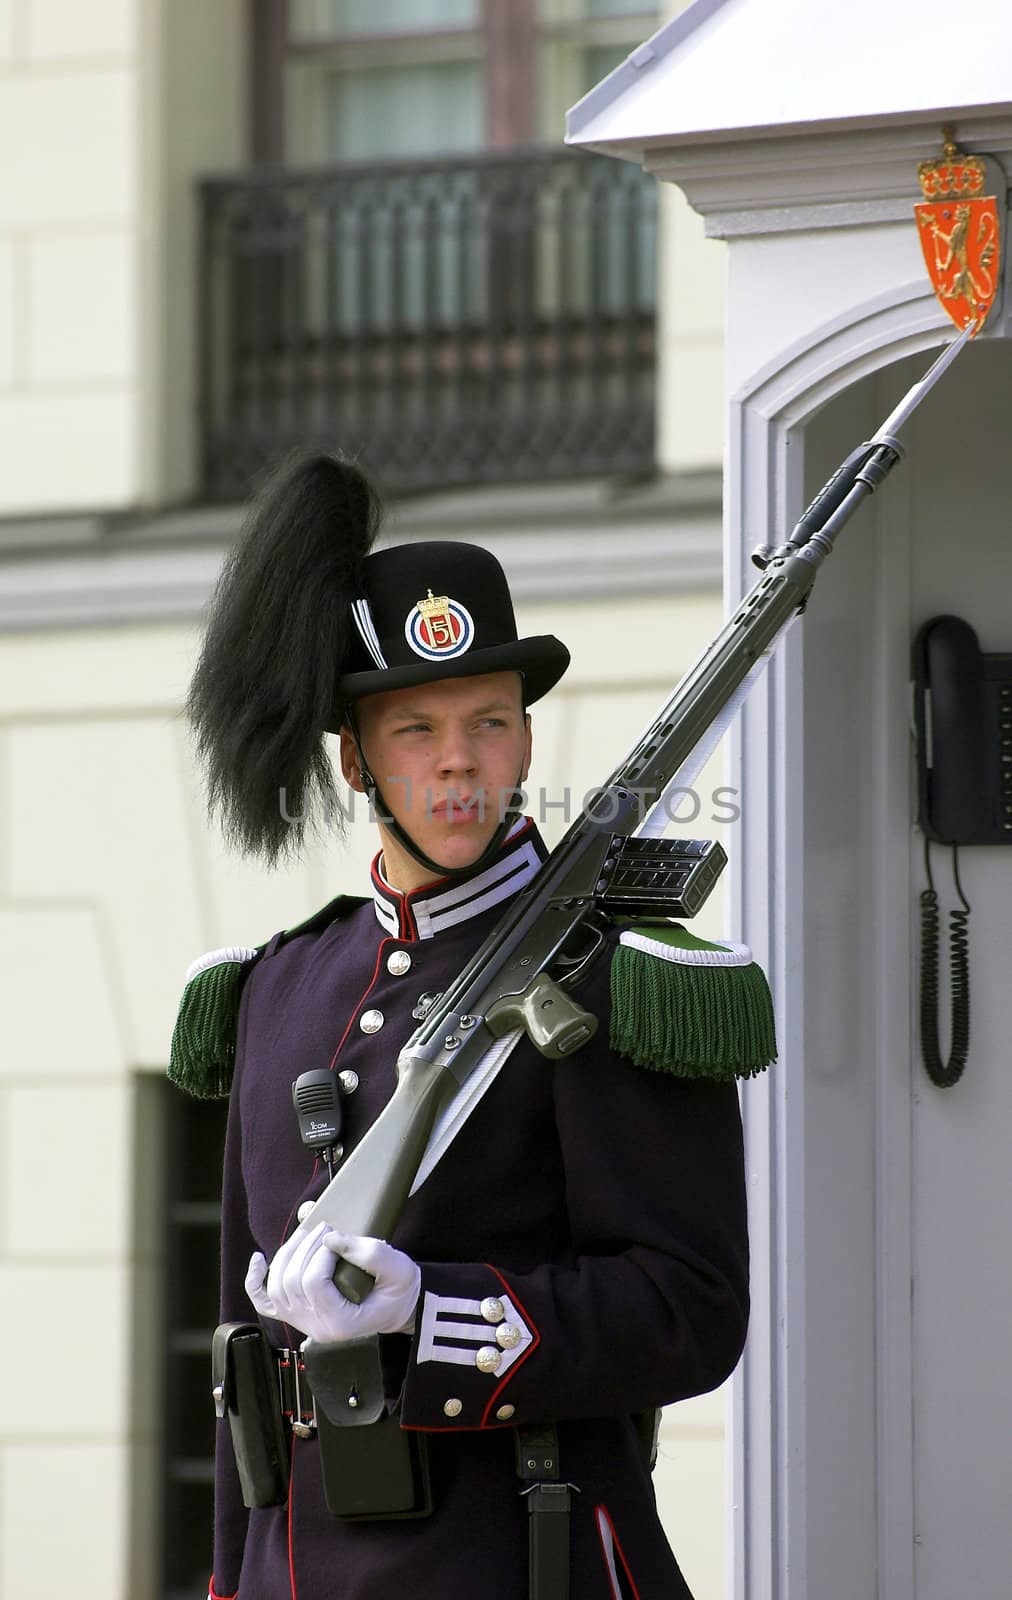 Guard by Espevalen